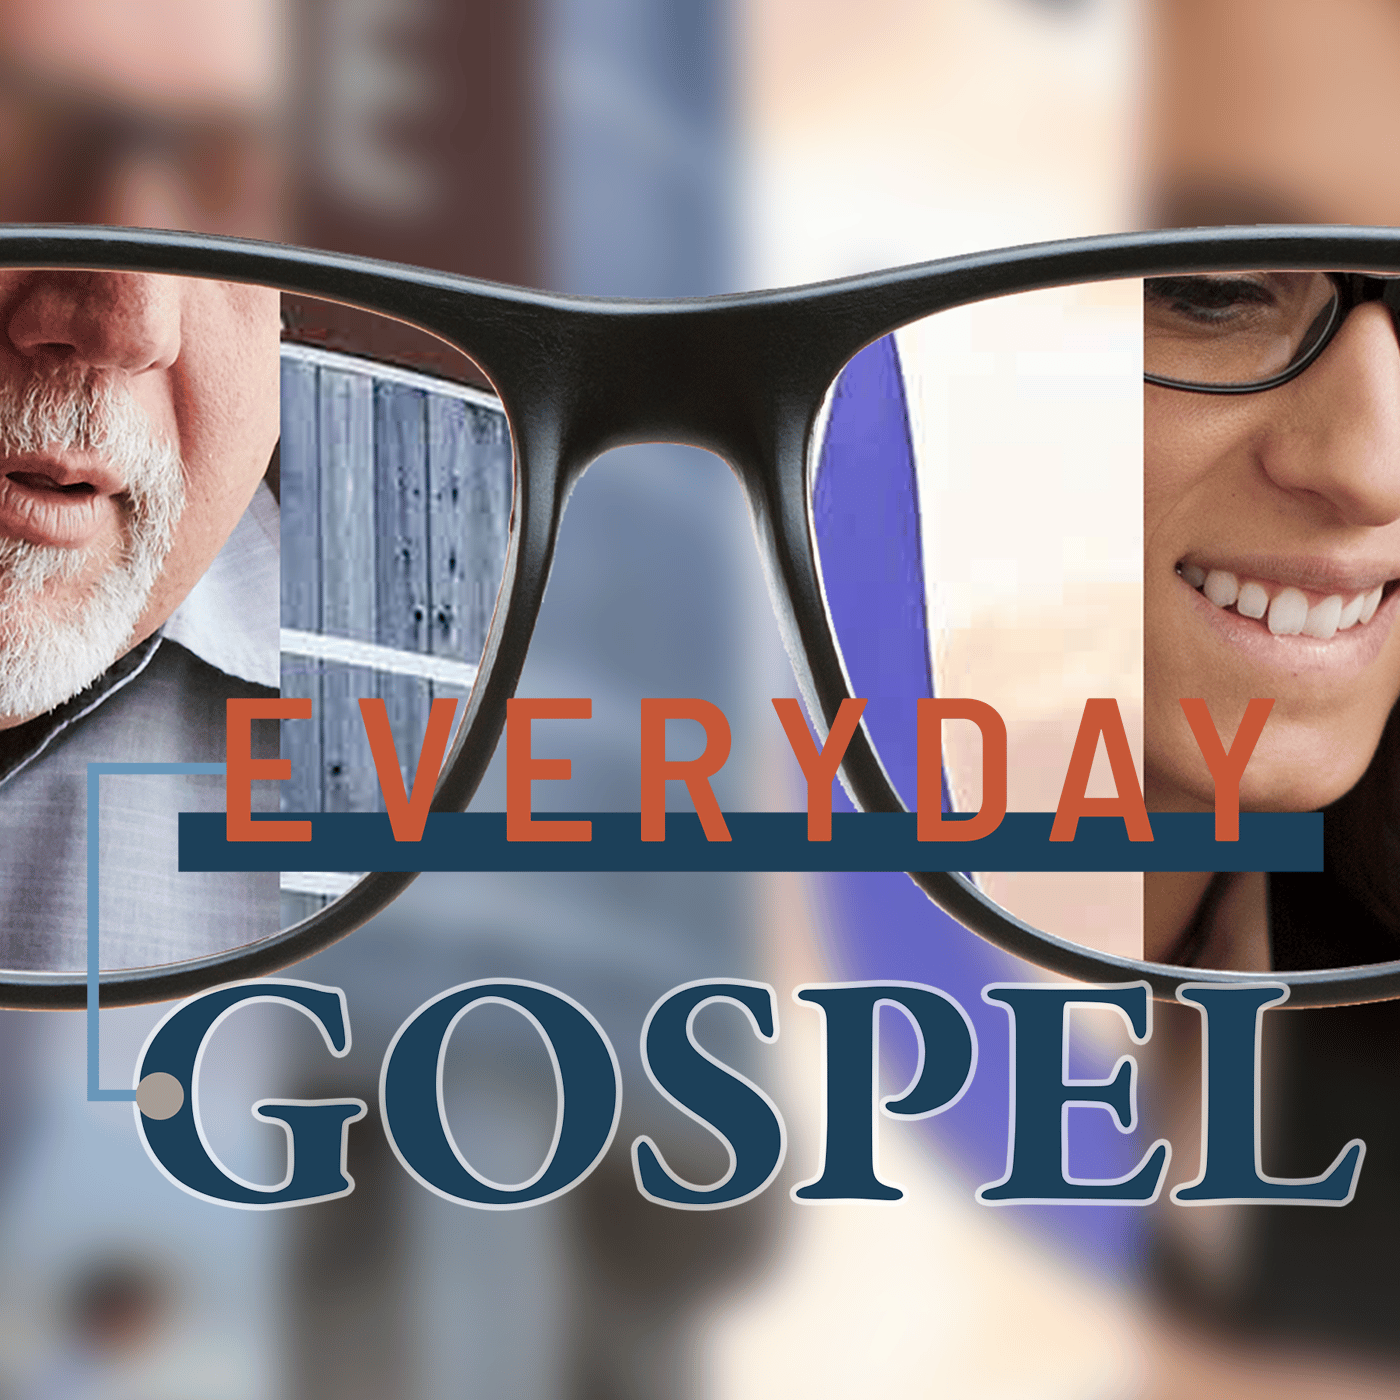 Everyday Gospel Fall 2022: Week 2 Image